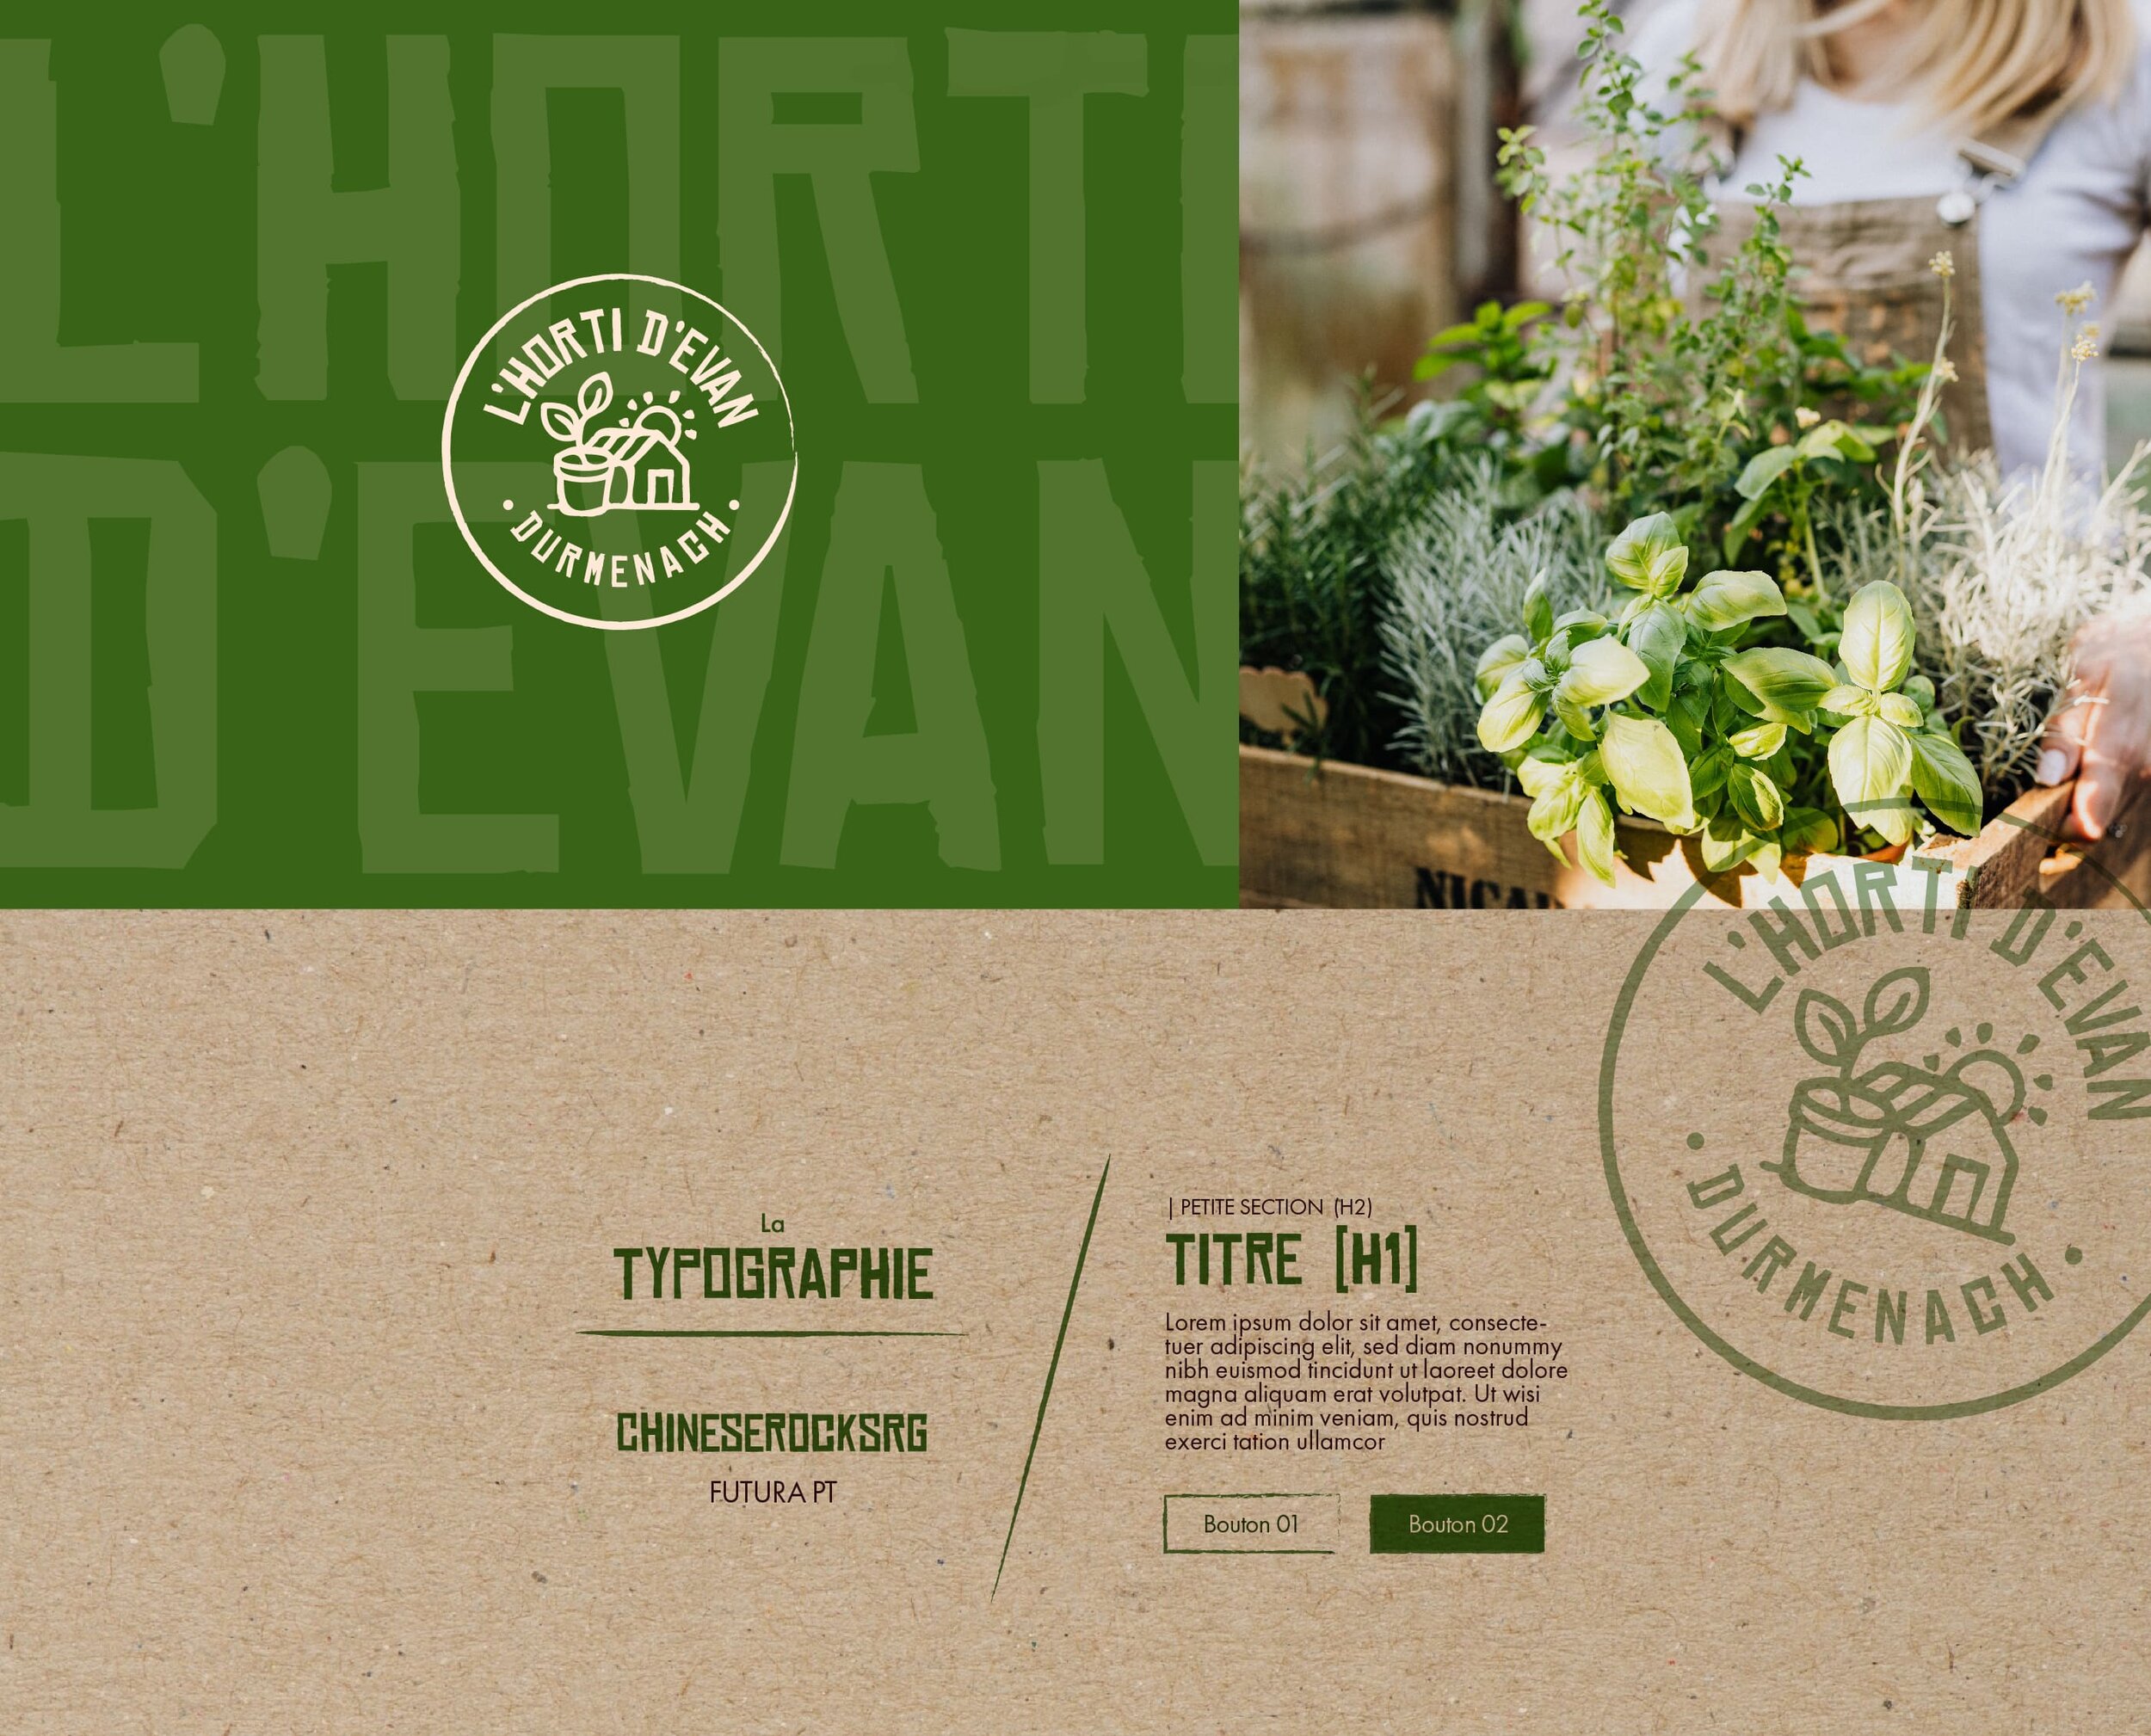 graphisme_5-lhorti-devan_horticulture_portfolio-typographie.jpg